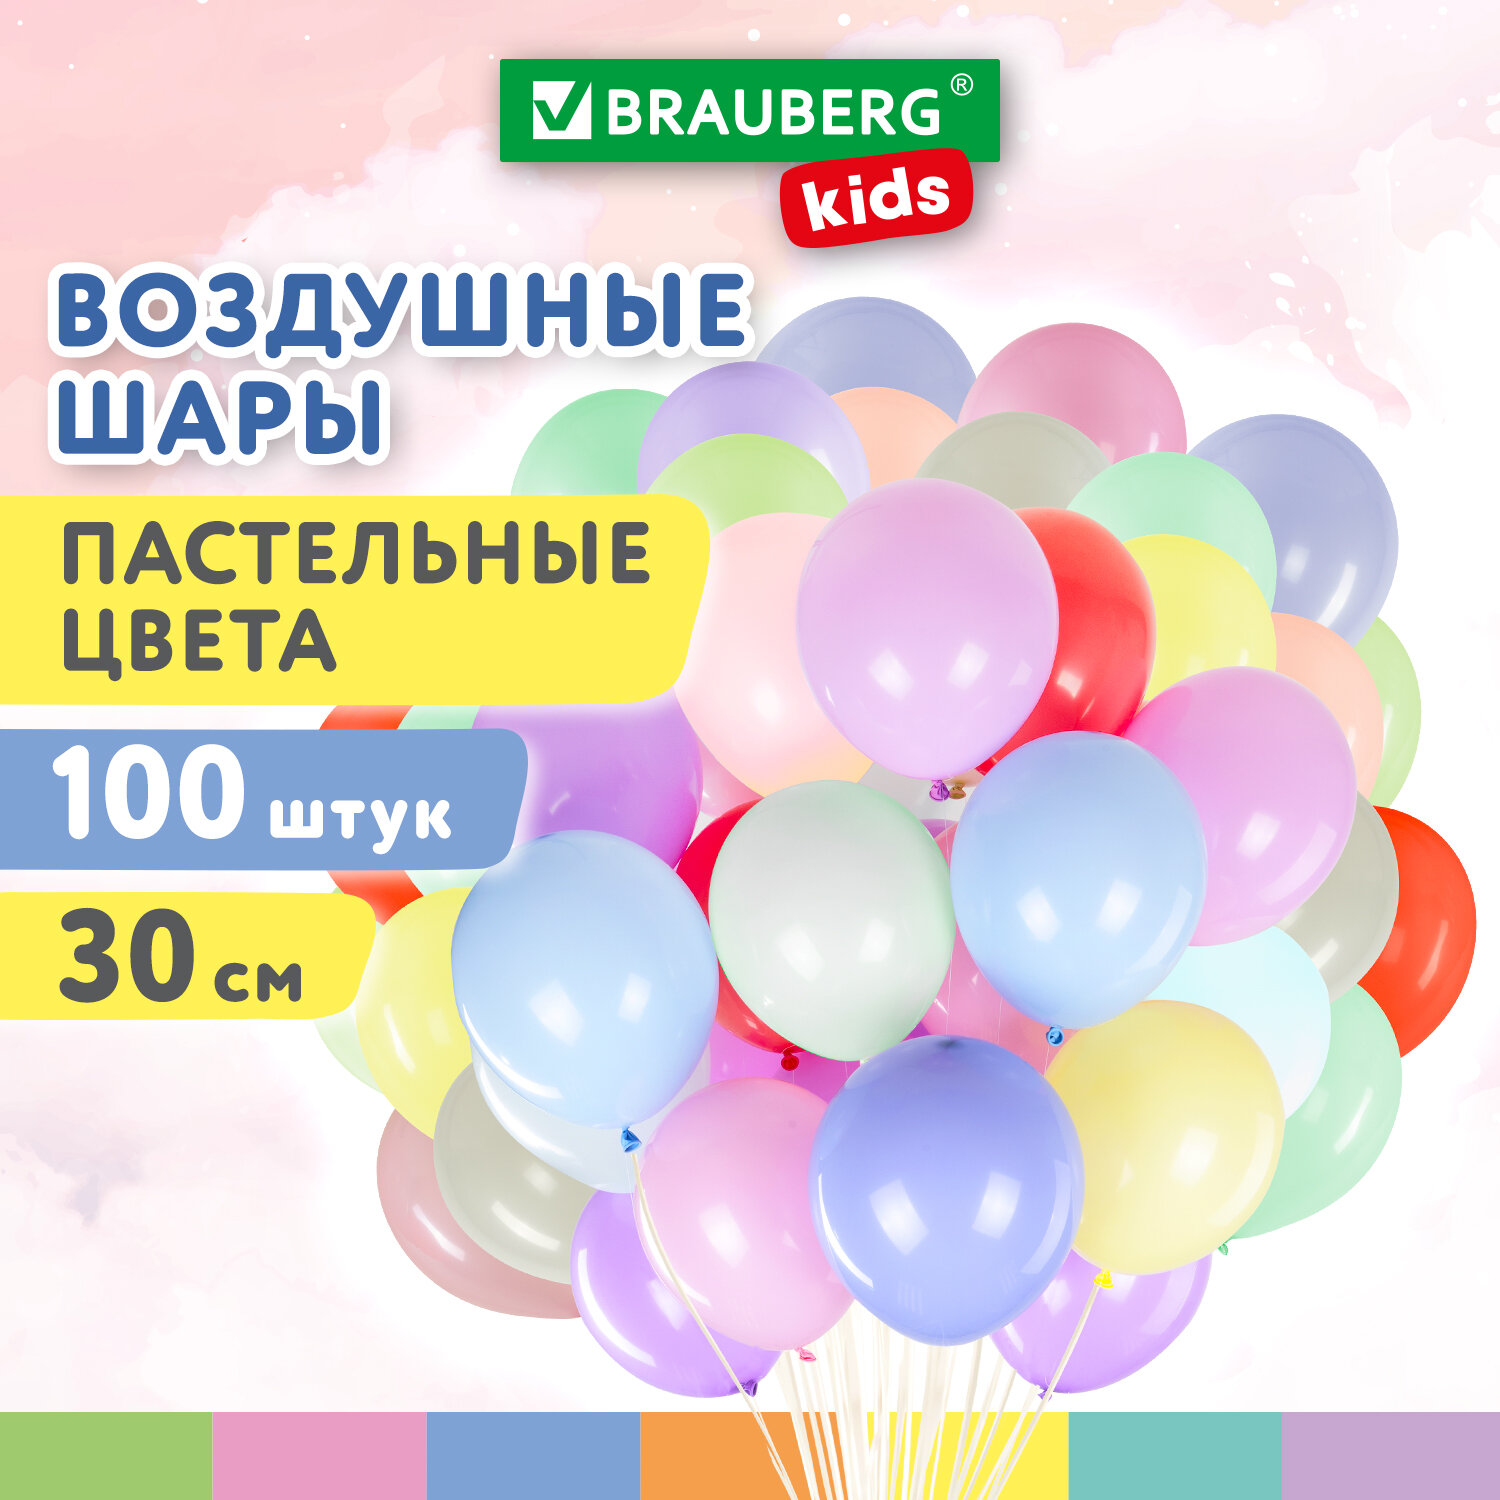 Шарики воздушные Brauberg Kids 591879 набор на день рождения, для фотозоны, 30 см, 100 шт набор воздушных шаров для оформления фотозоны